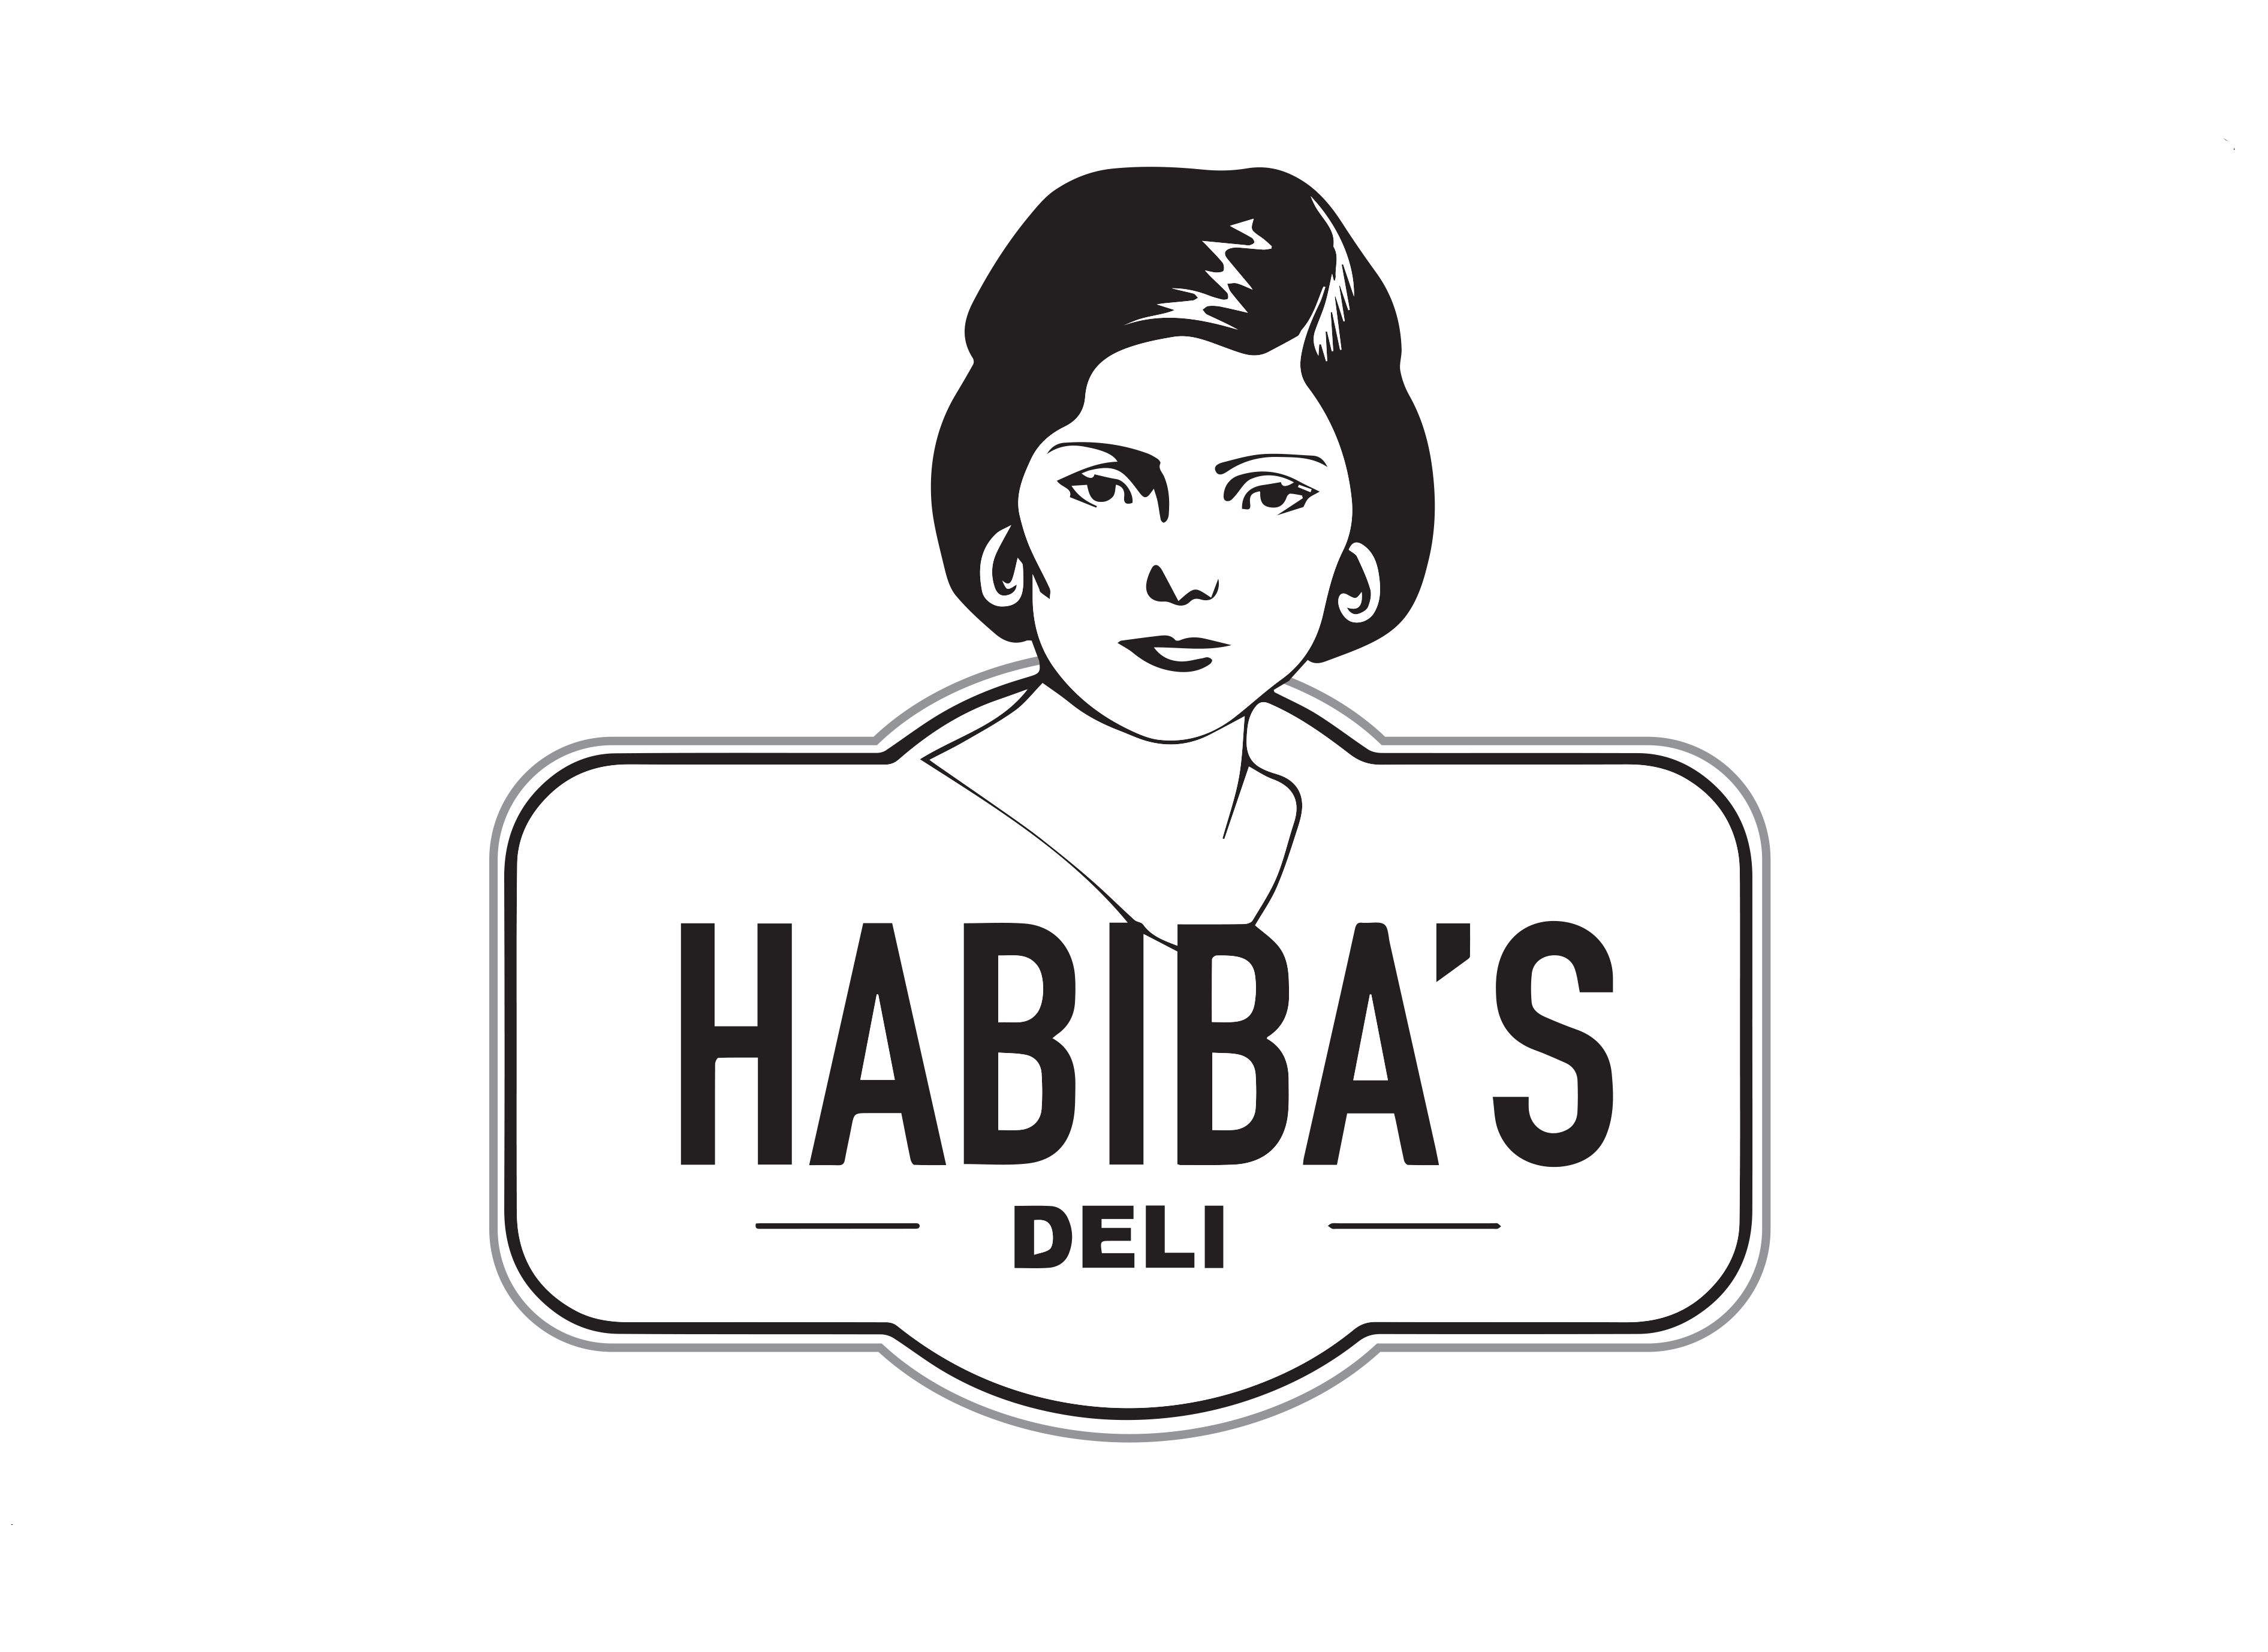 Habibas Deli